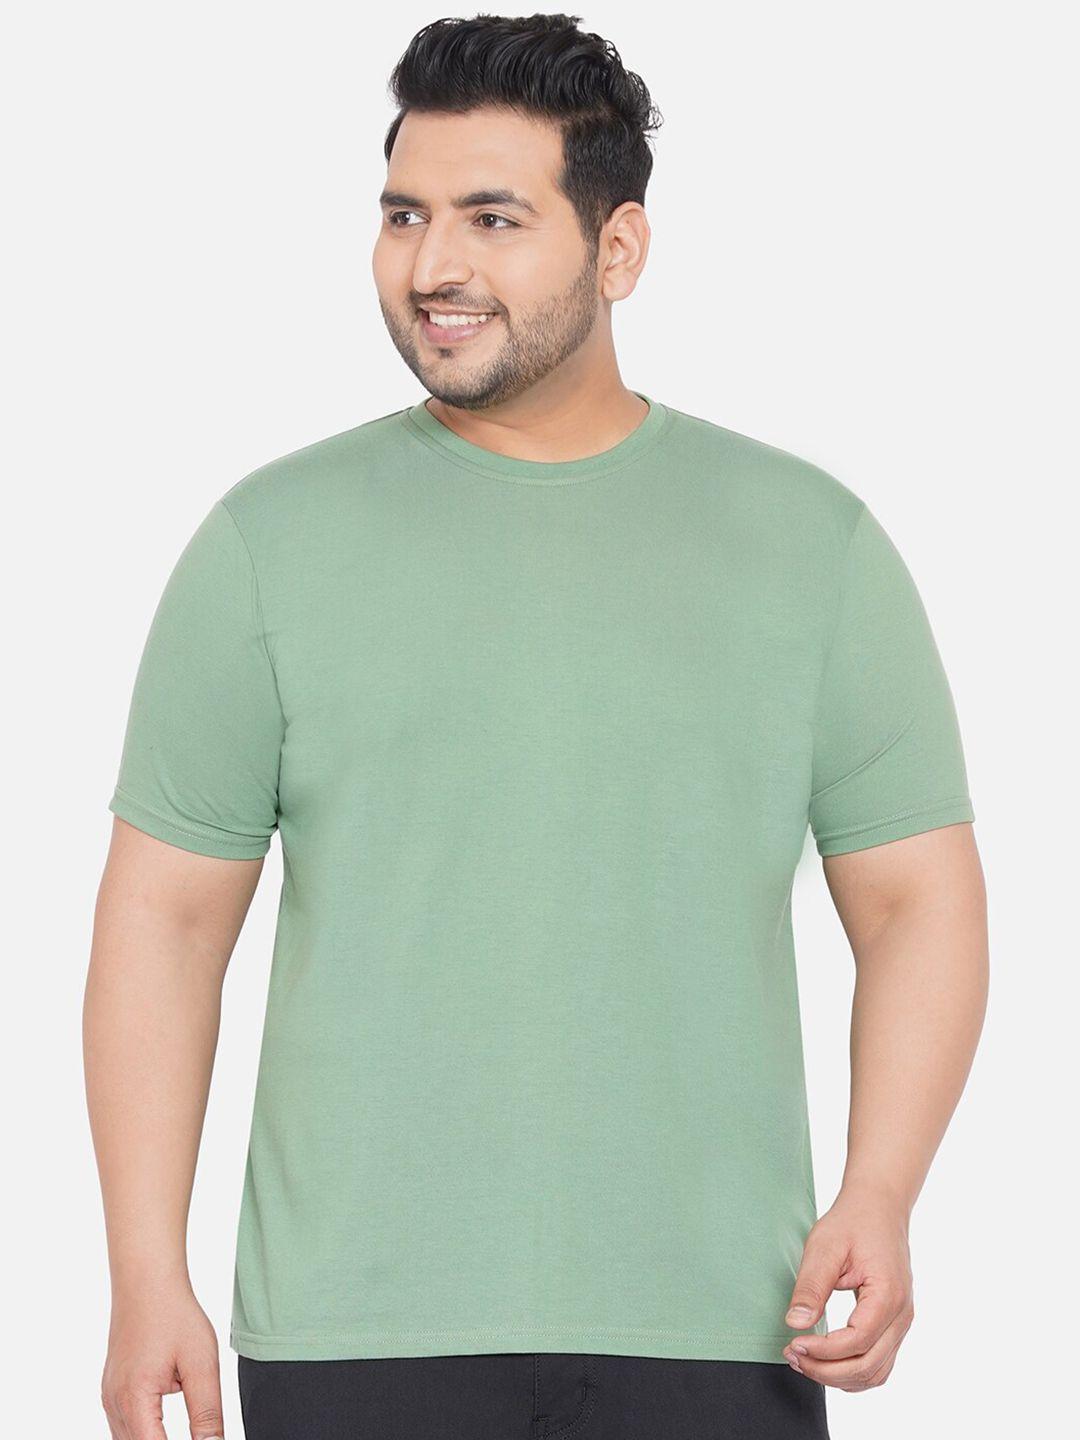 john pride men plus size sea green cotton  t-shirt